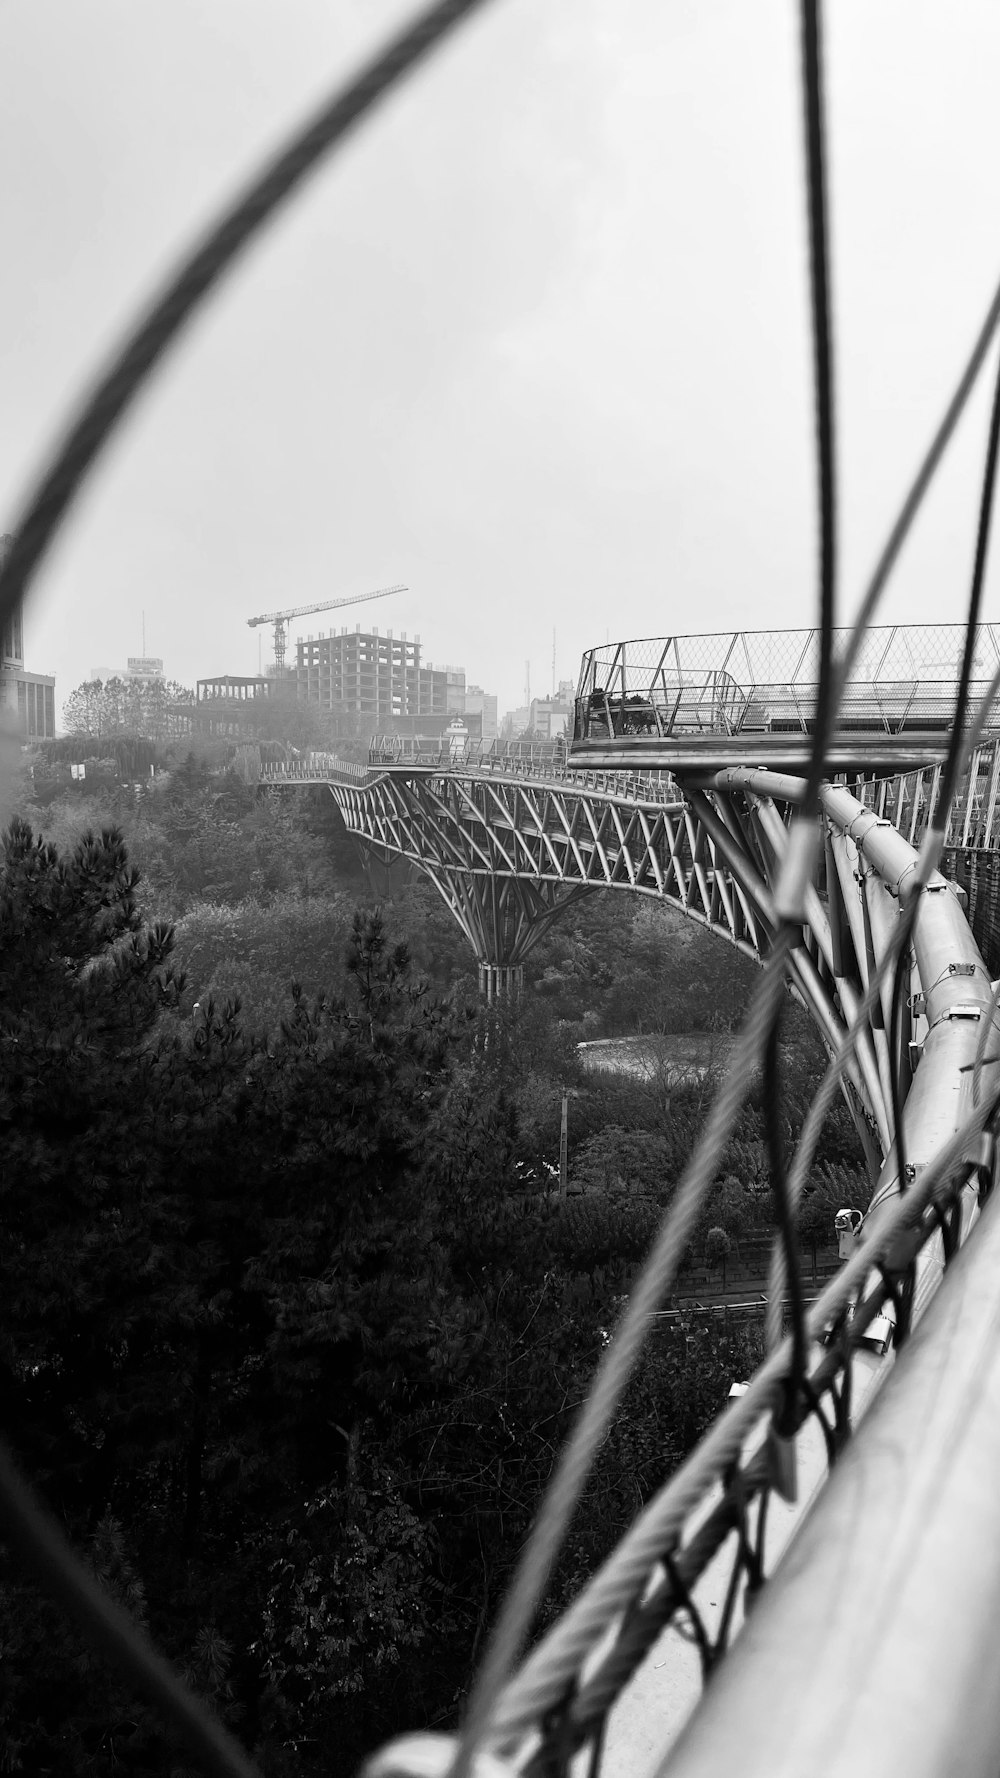 Una veduta di un ponte da dietro una recinzione metallica